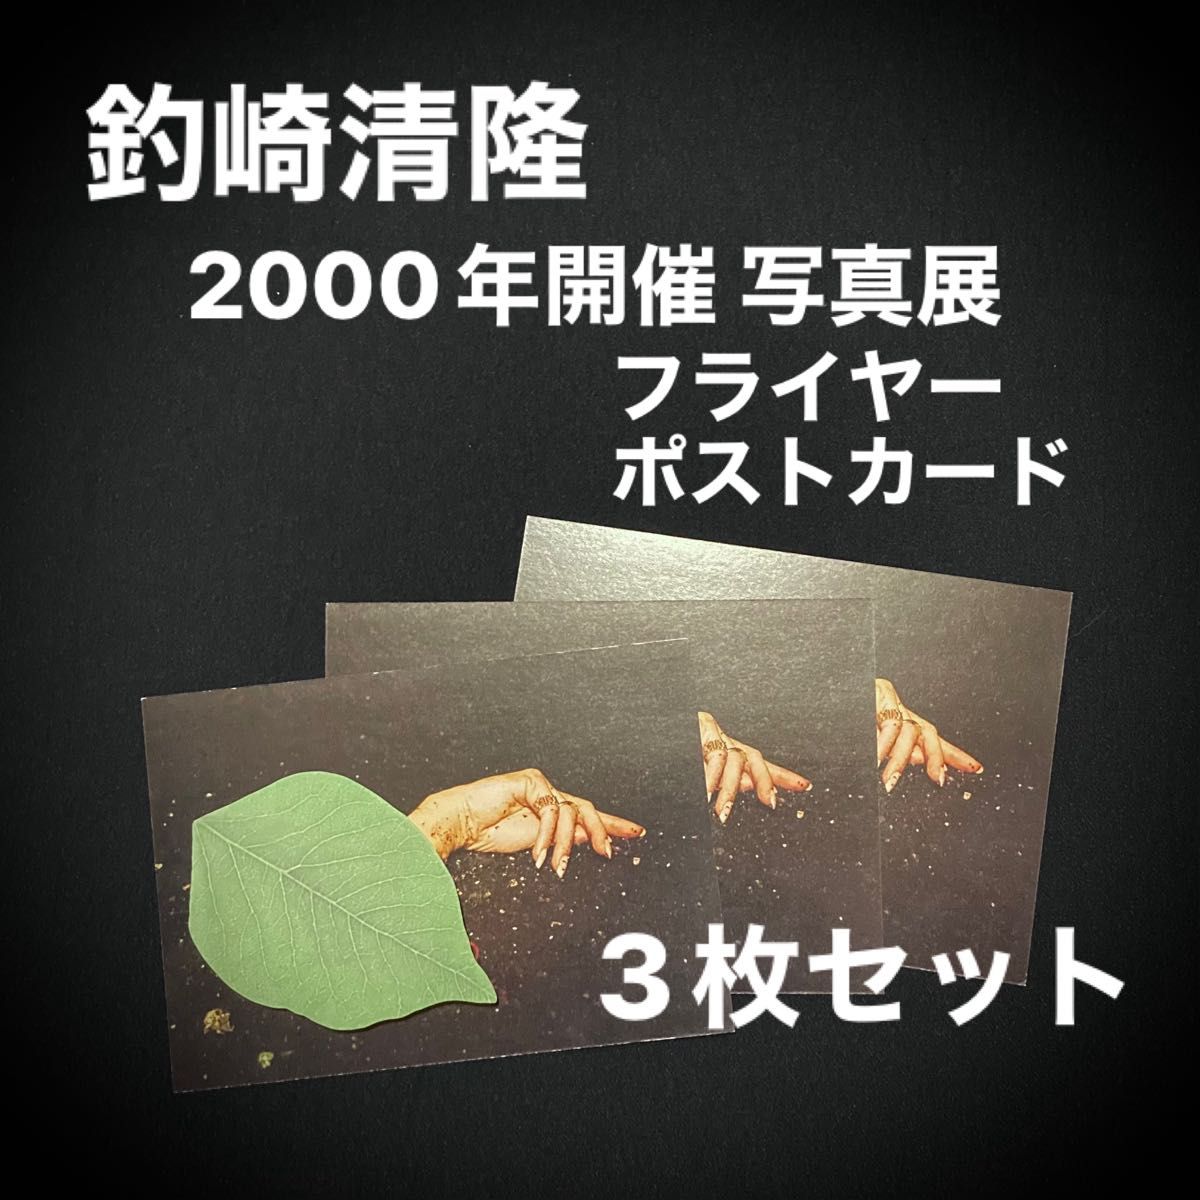 【 レア 】 3枚セット 釣崎清隆 写真展 2000年 SHOCK WORKS ポストカード フライヤー